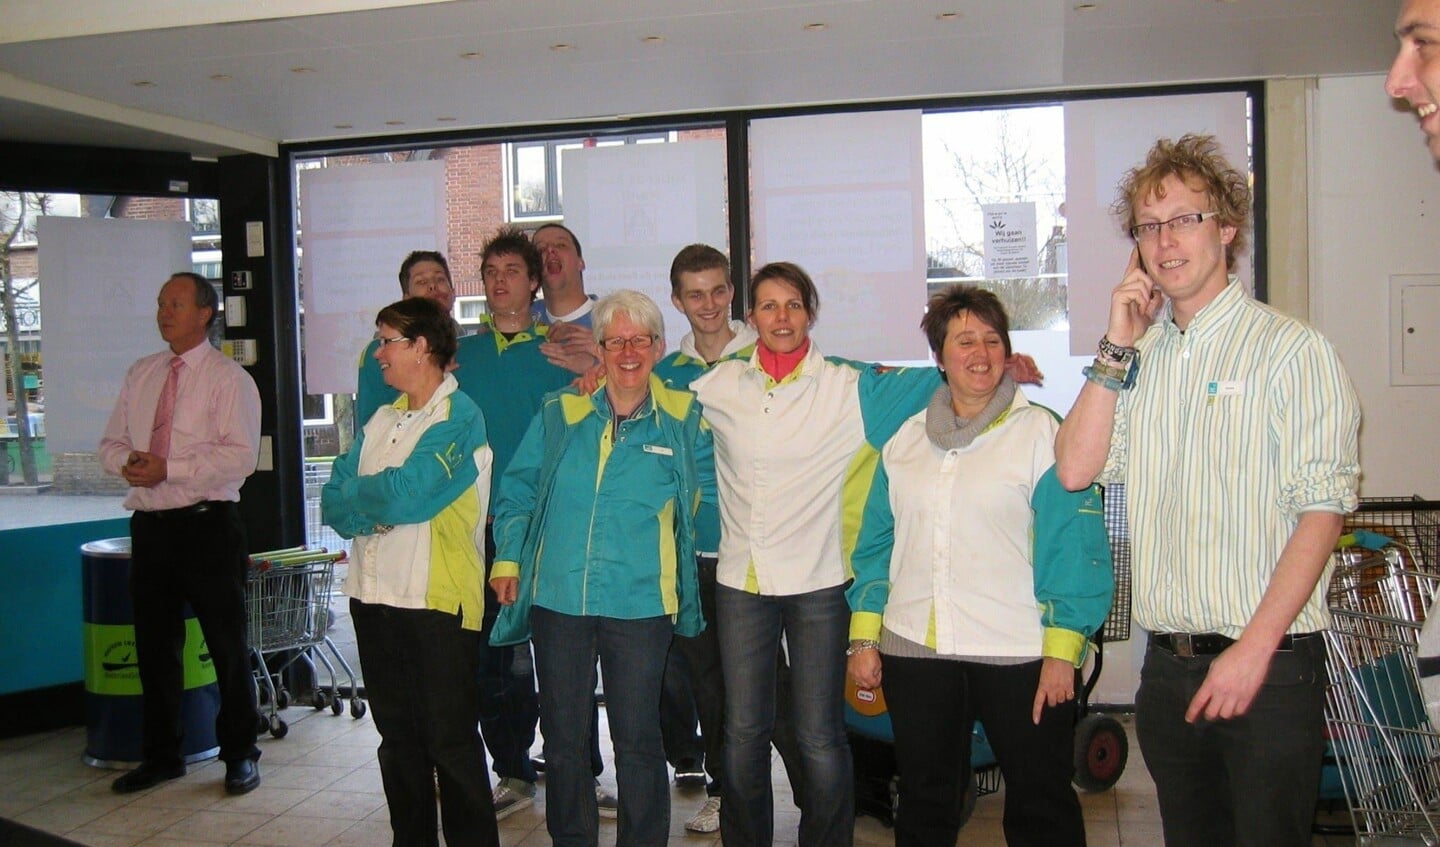 Team Super de Boer tijdens de sluiting in januari 2011, met onder andere Corrie, Esther, Dennis, Henriette en Patrick.